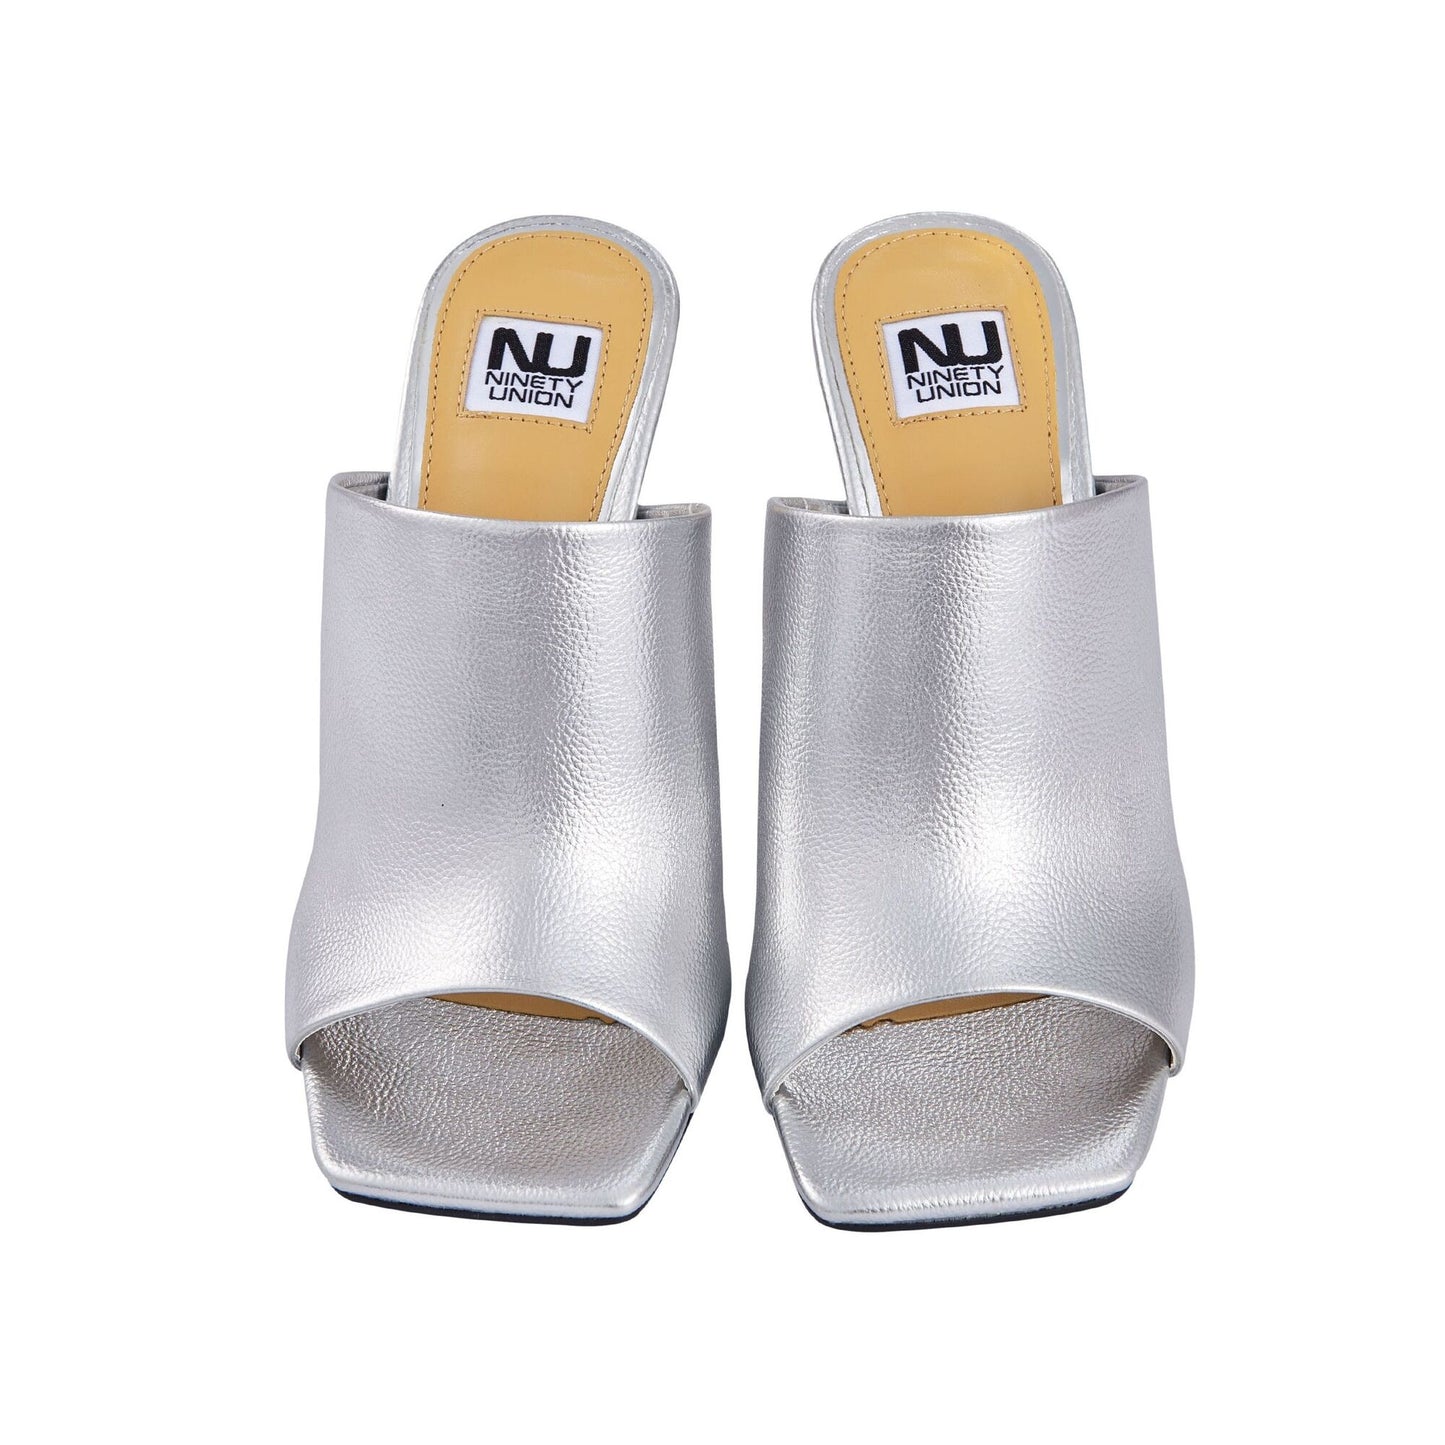 Ninety Union Rumba Open Toe One Band Slide With A Metallic Decorative Heel